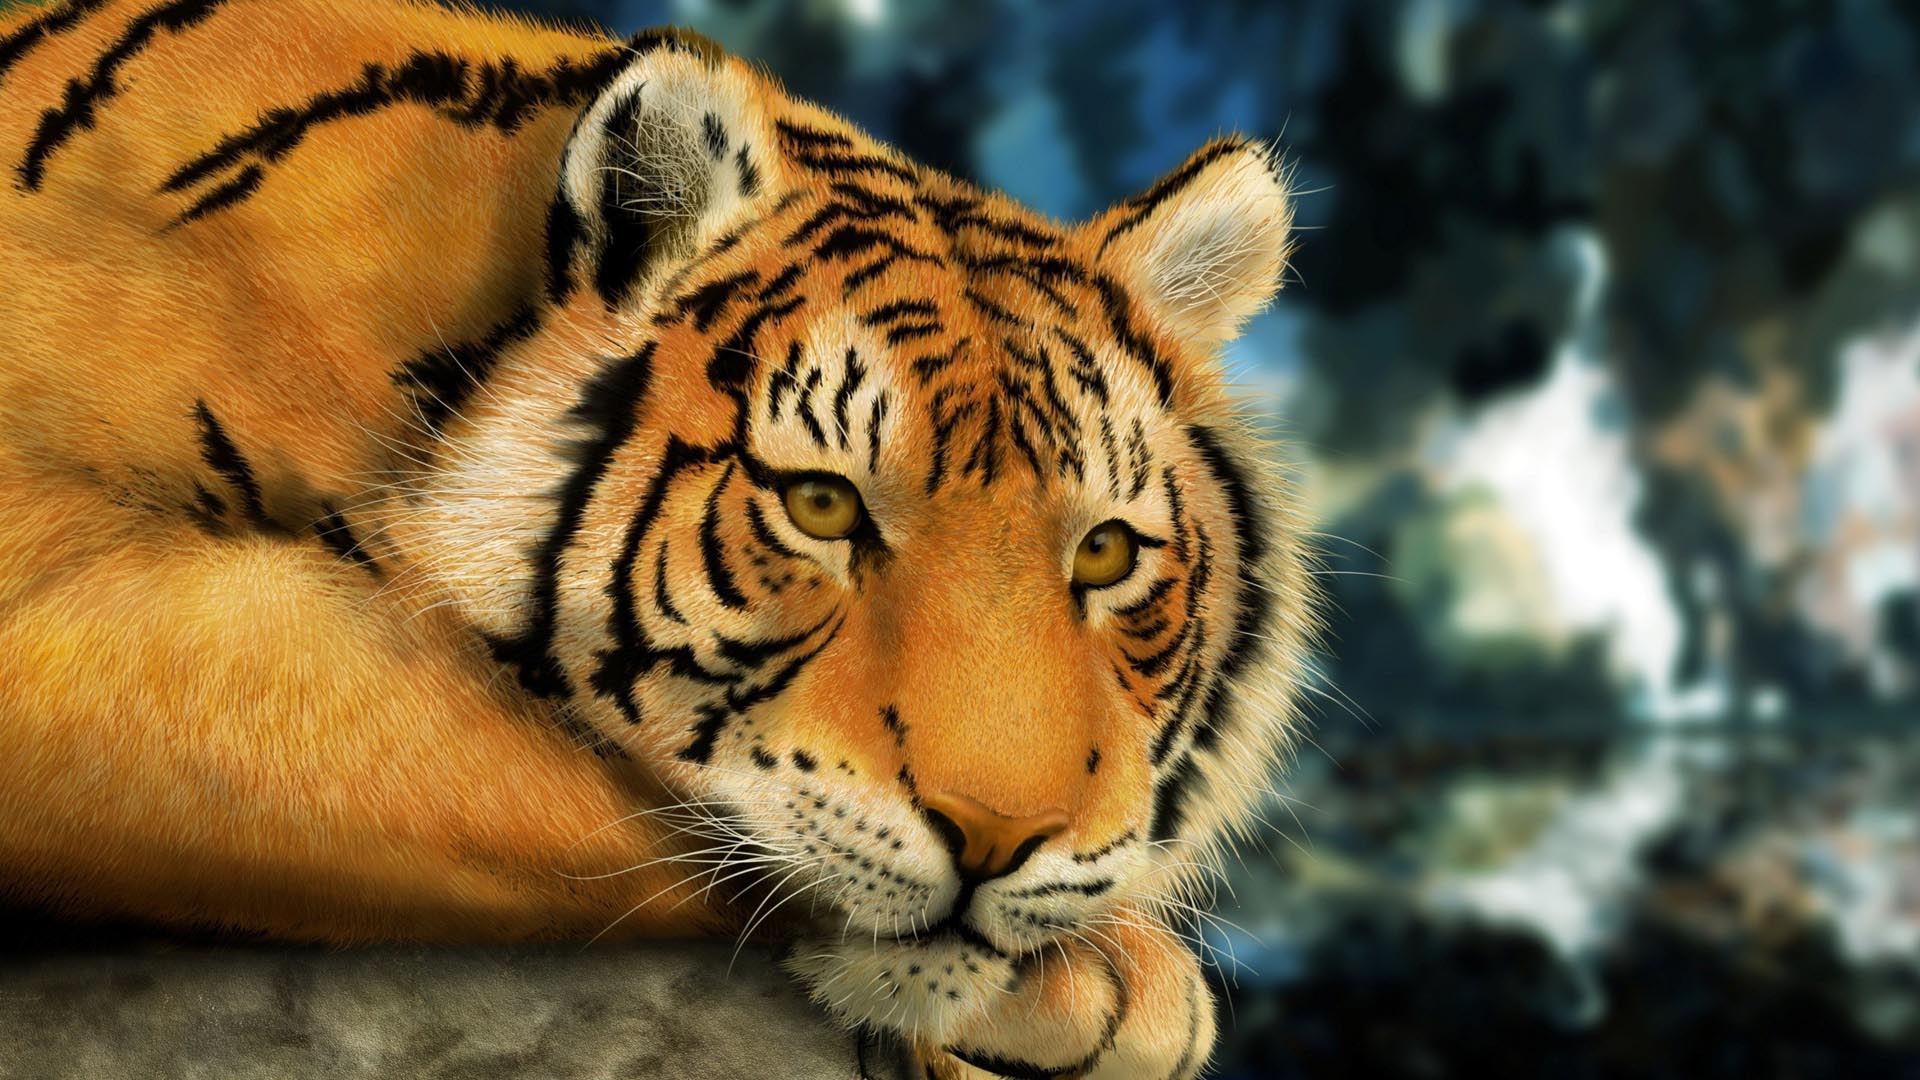 tiger hd wallpaper,tiger,mammal,wildlife,terrestrial animal,vertebrate